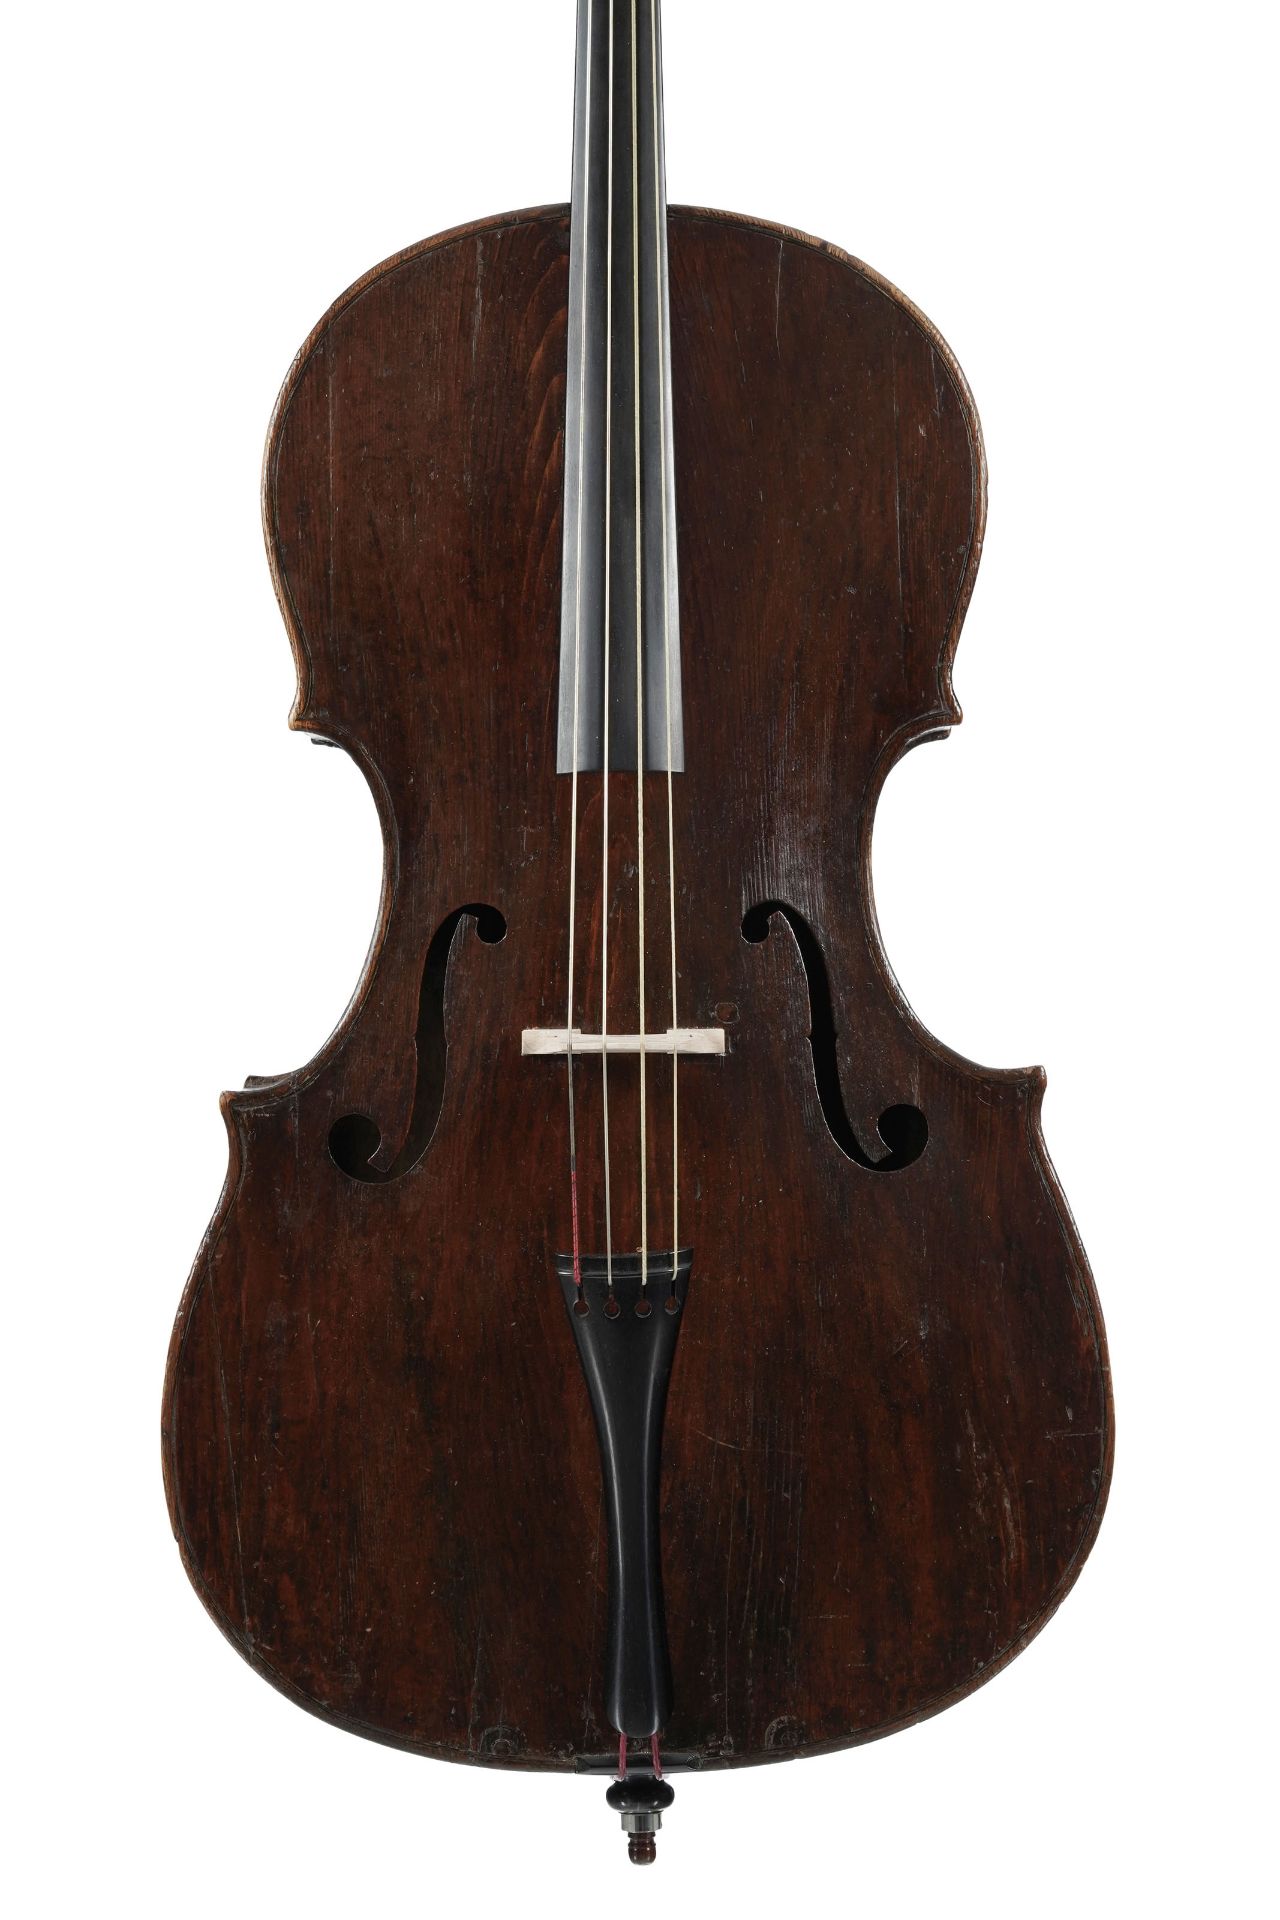 Violoncelle italien XVIIIe s. avec étiquette partiellement déchirée de Testore, restauré par Breton